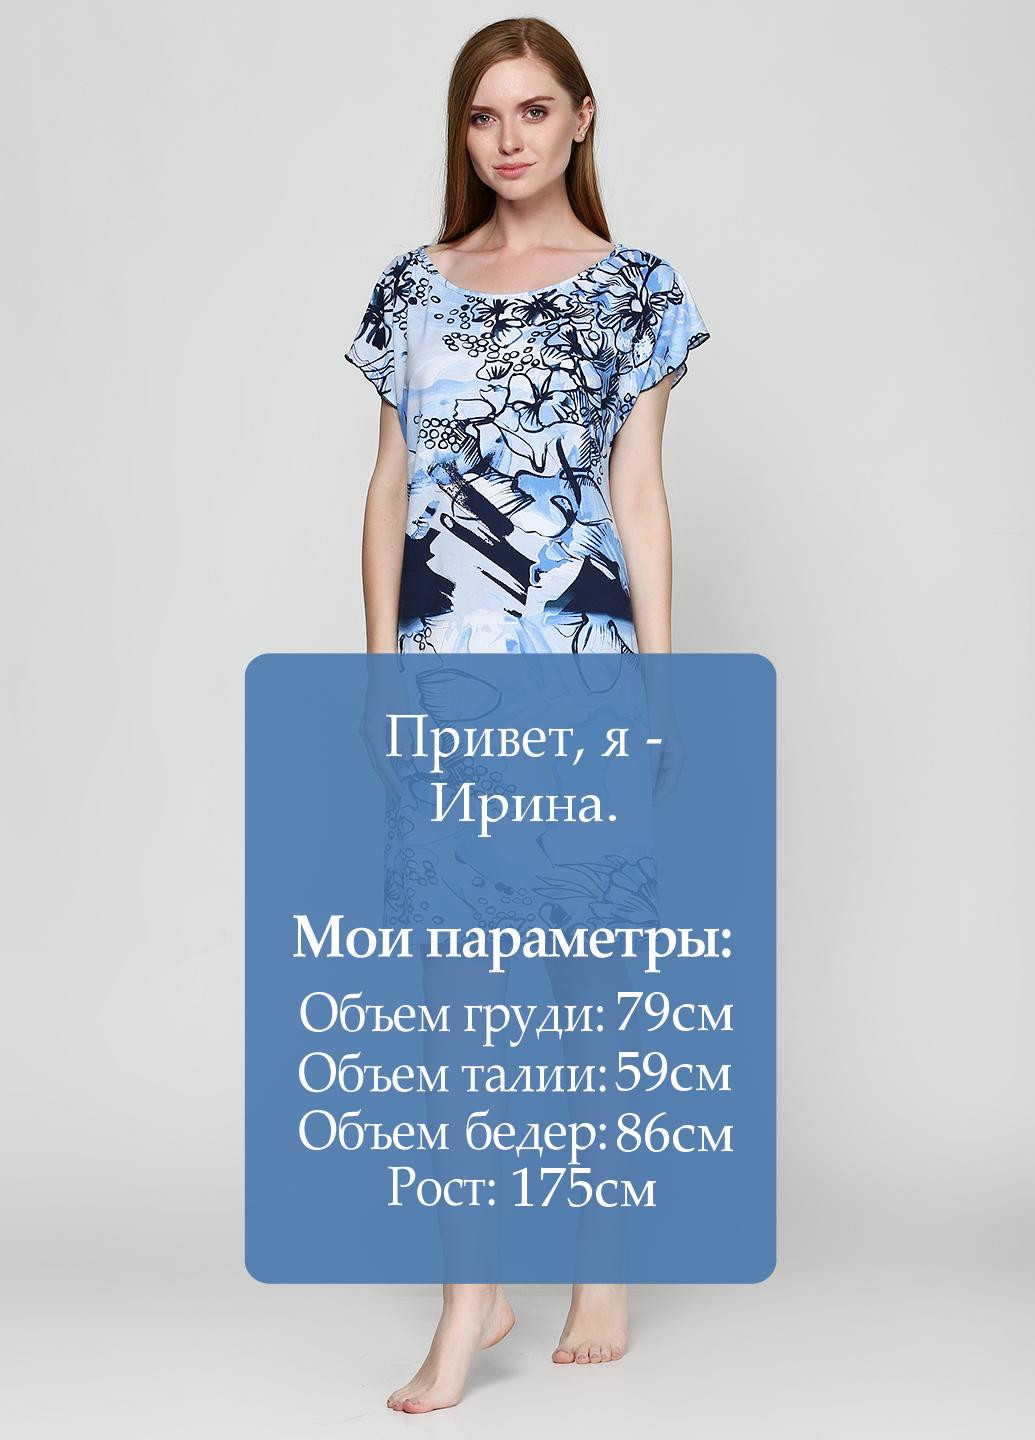 Голубое домашнее платье JULIA с абстрактным узором